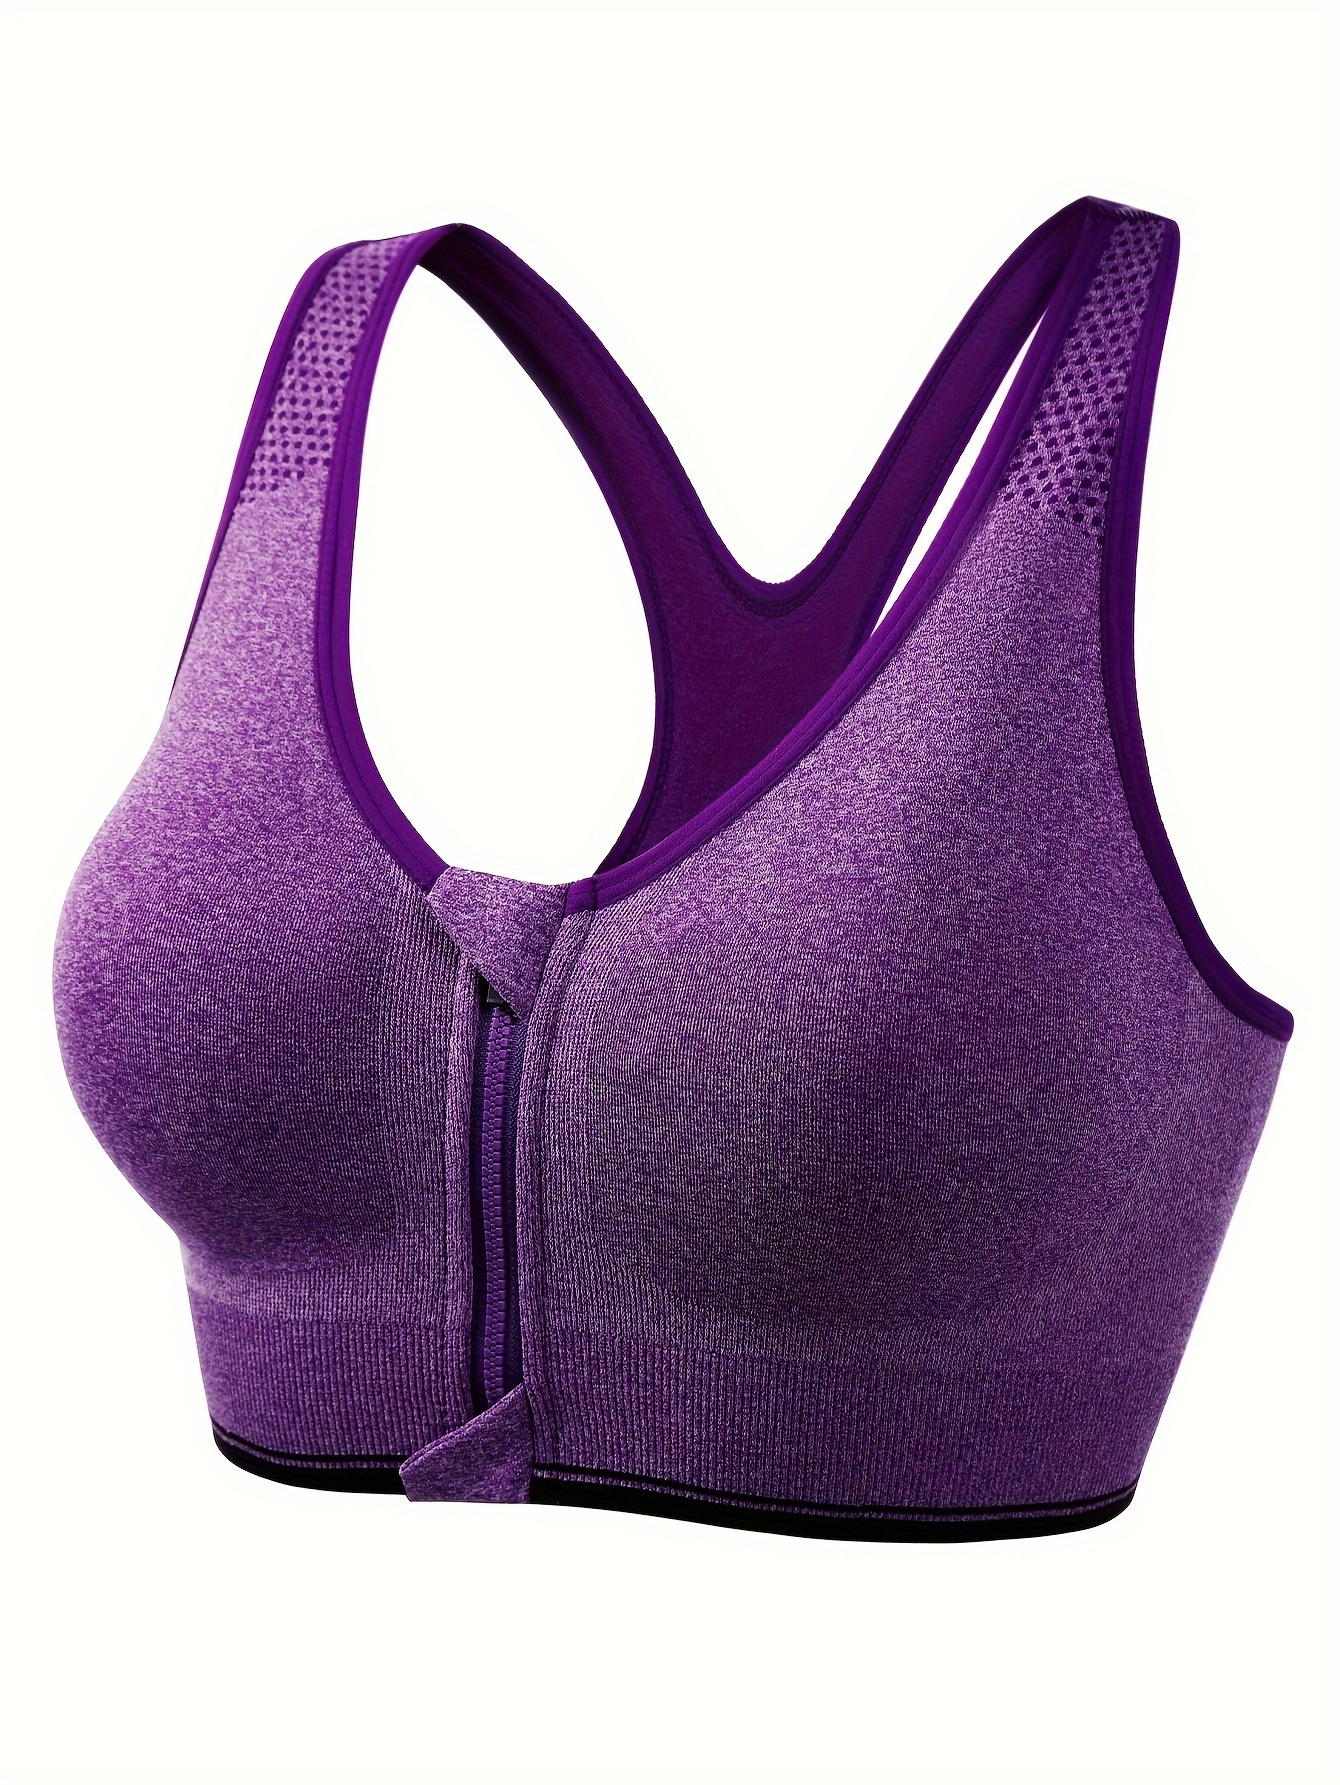 Purple Sports Bras for Women